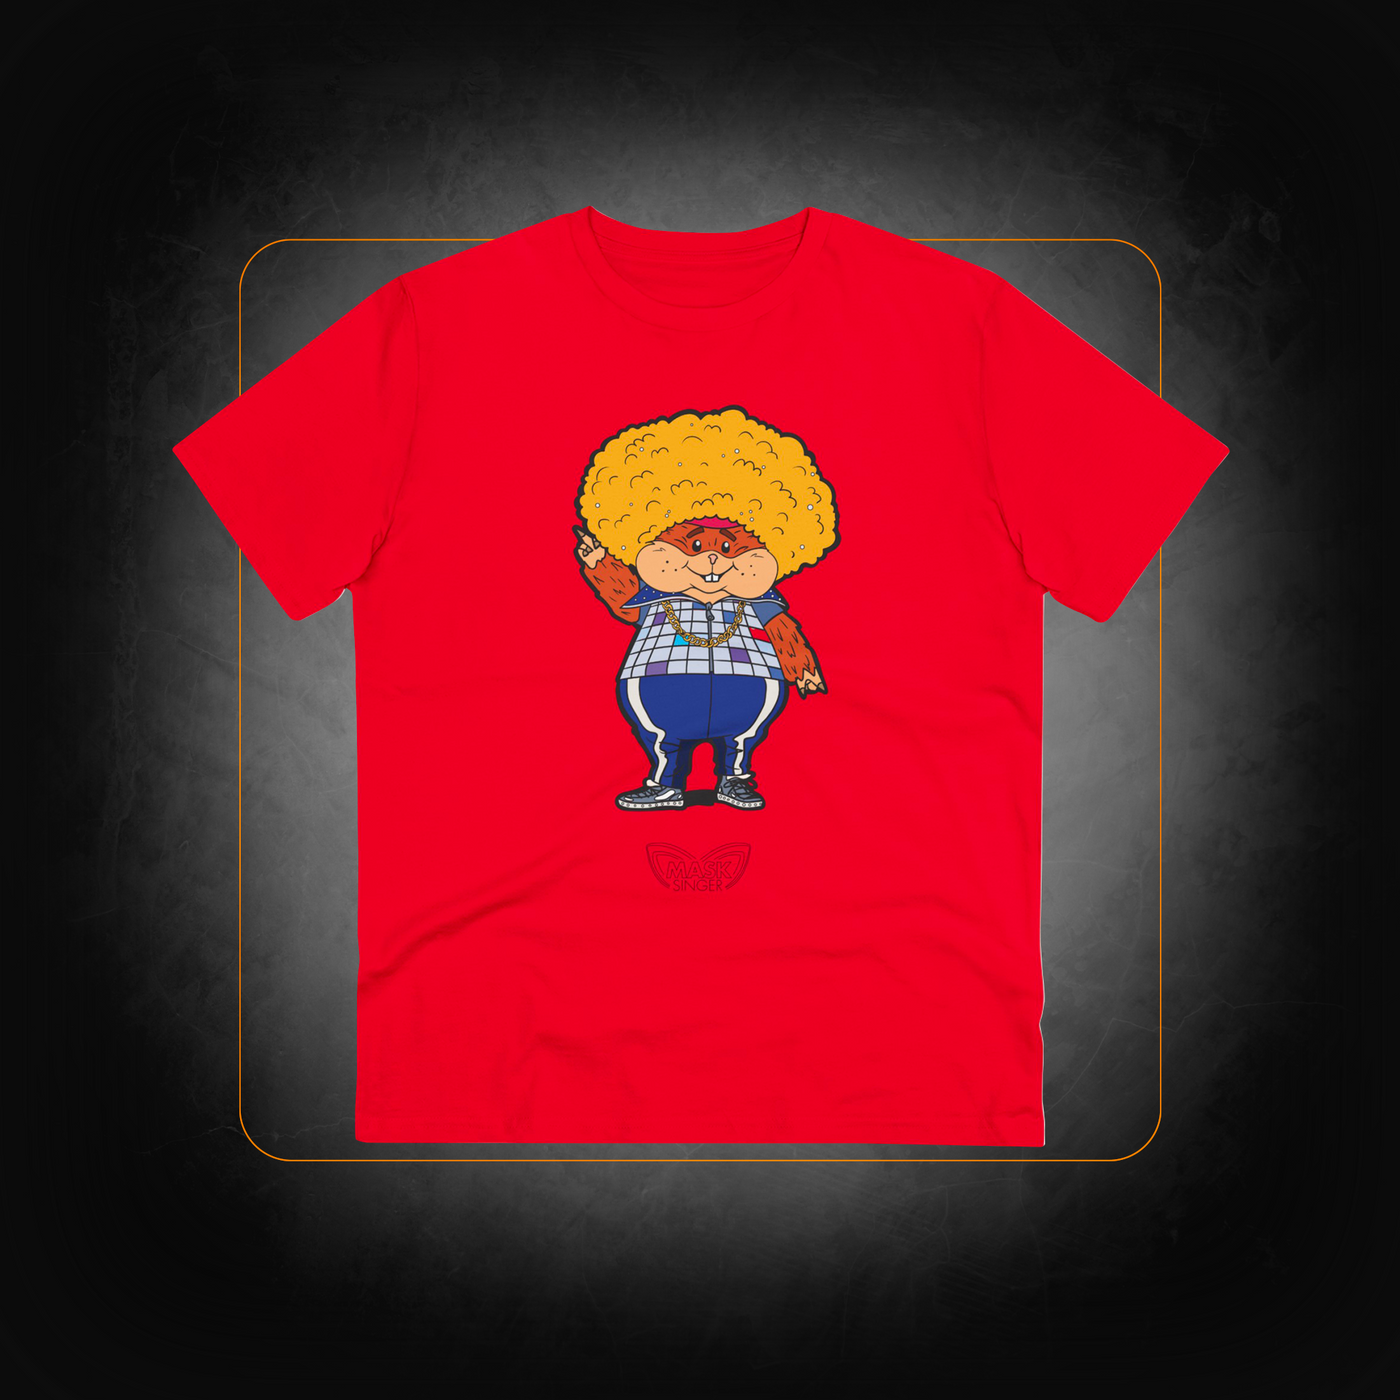 Hamster T-Shirt - Mask Singer